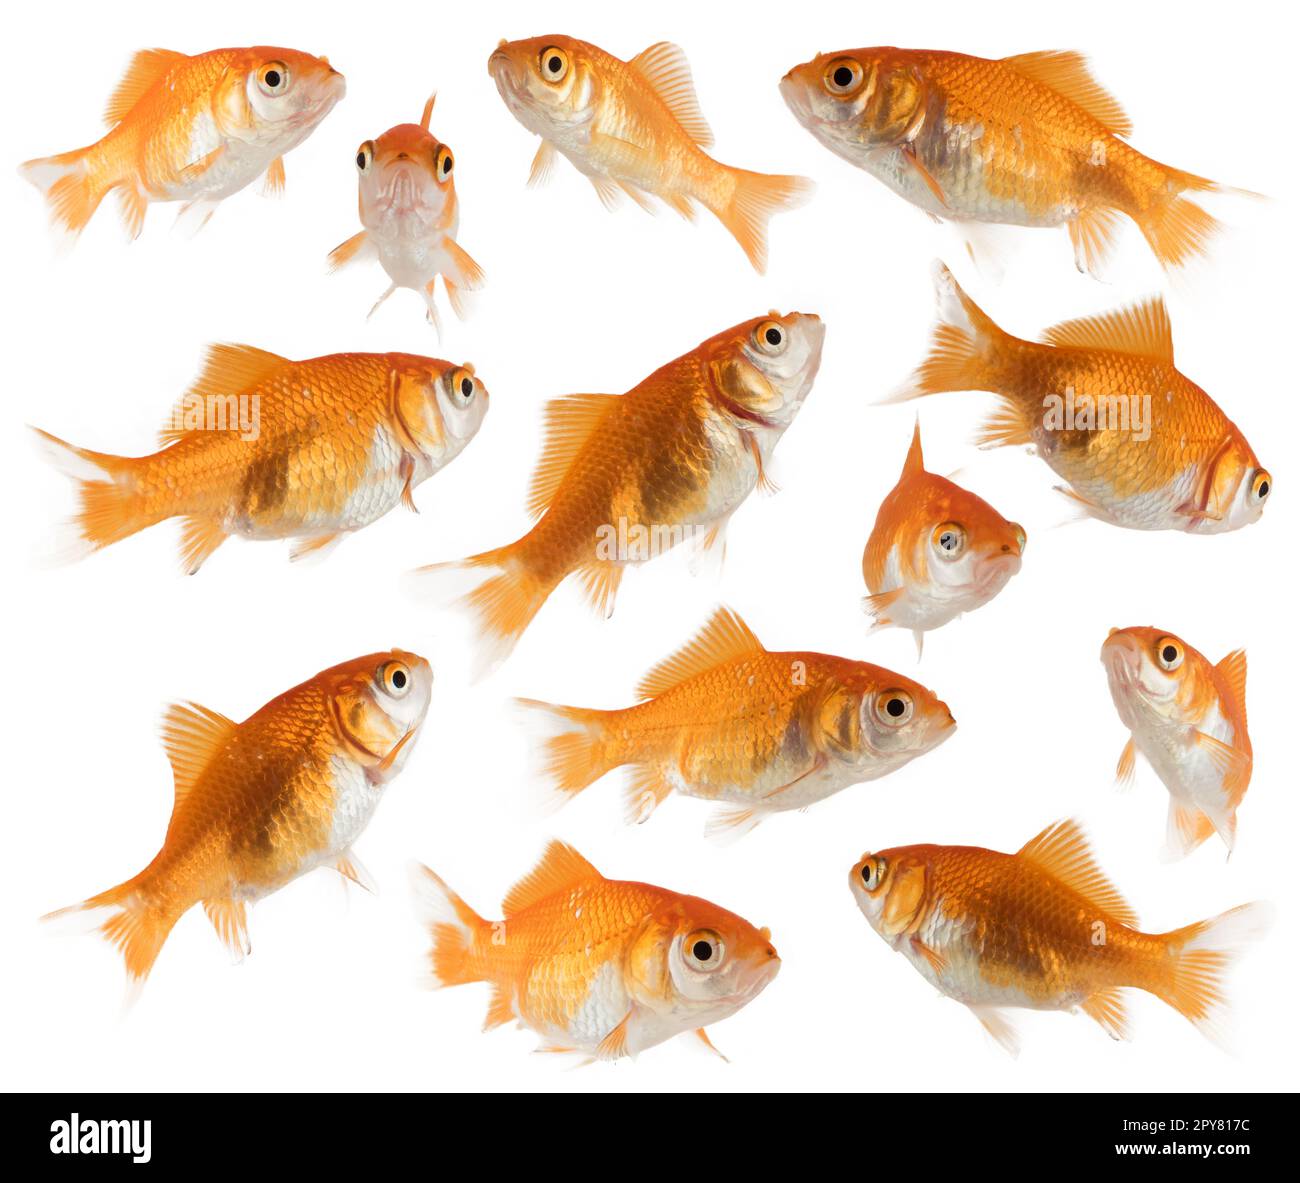 Immagine dei pesci d'oro dell'acquario che nuotano insieme Foto Stock